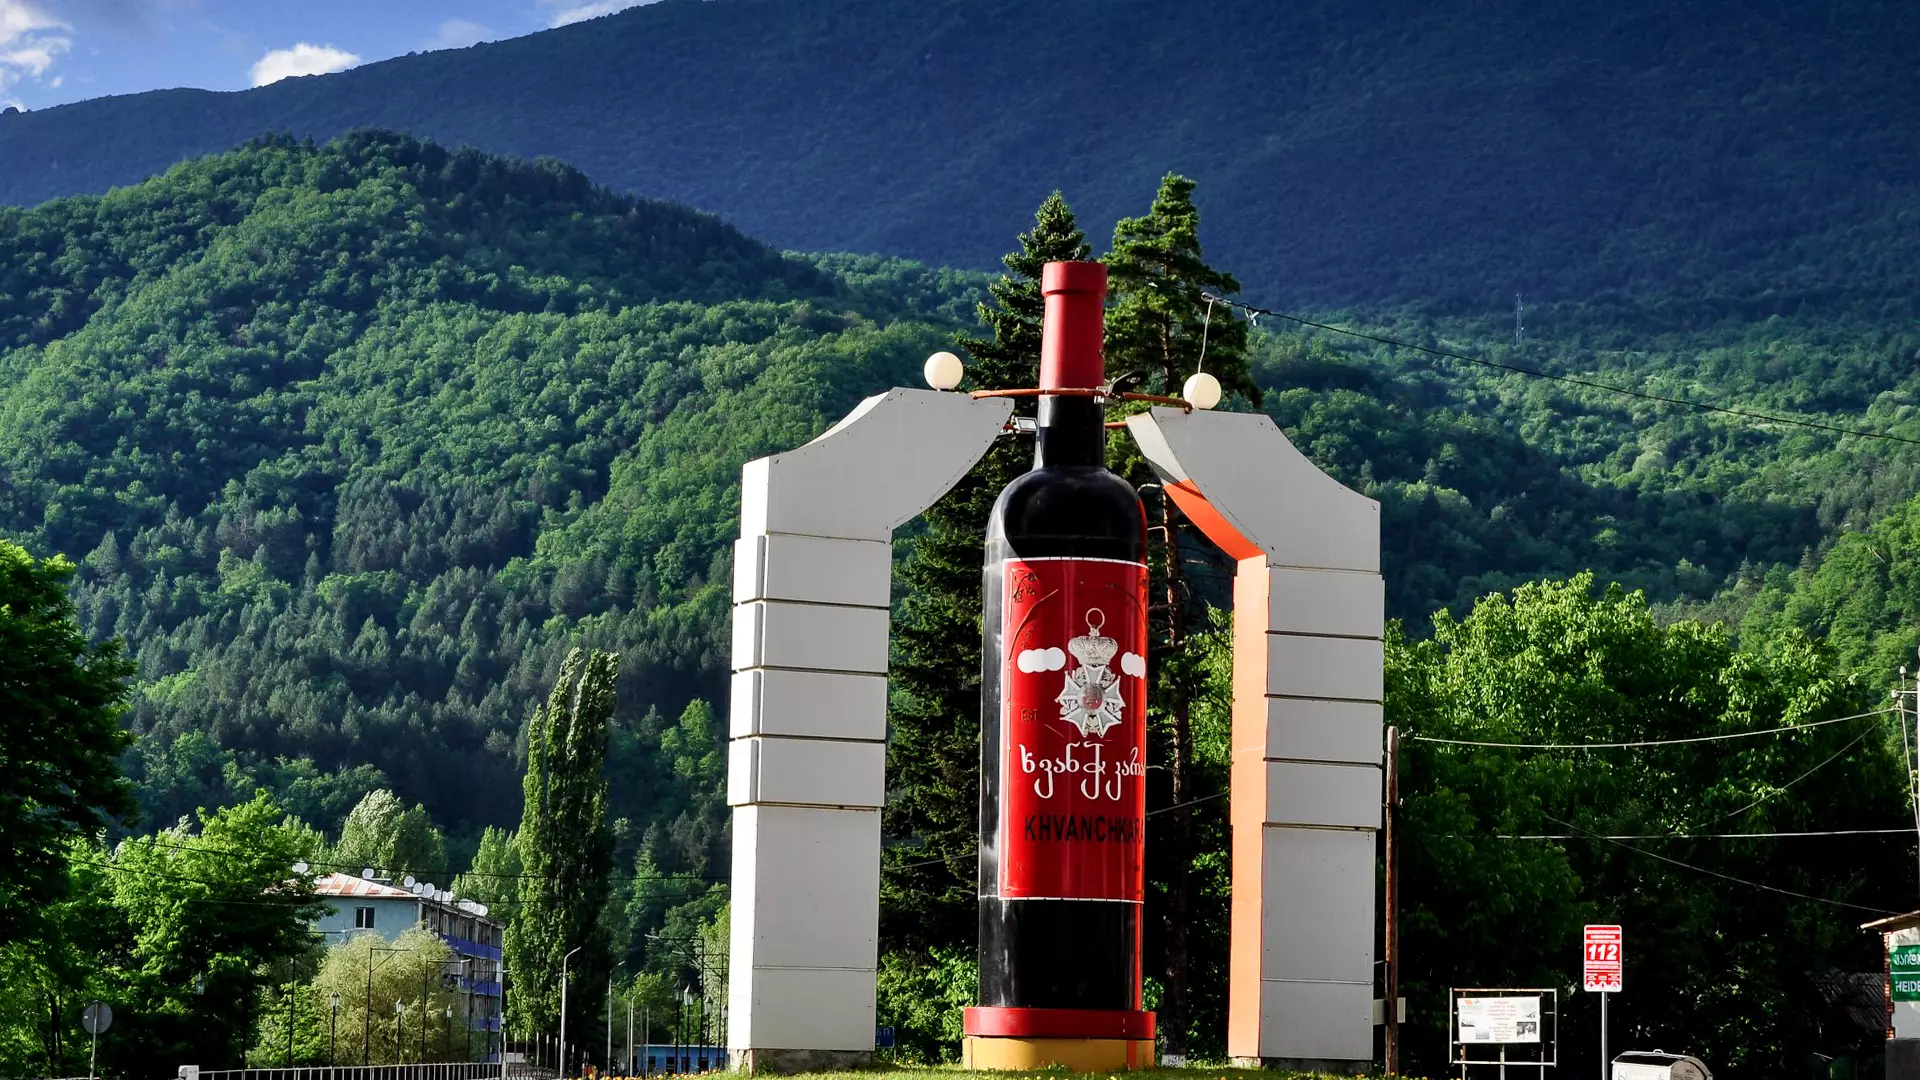 Khvanchkara Wine Monument